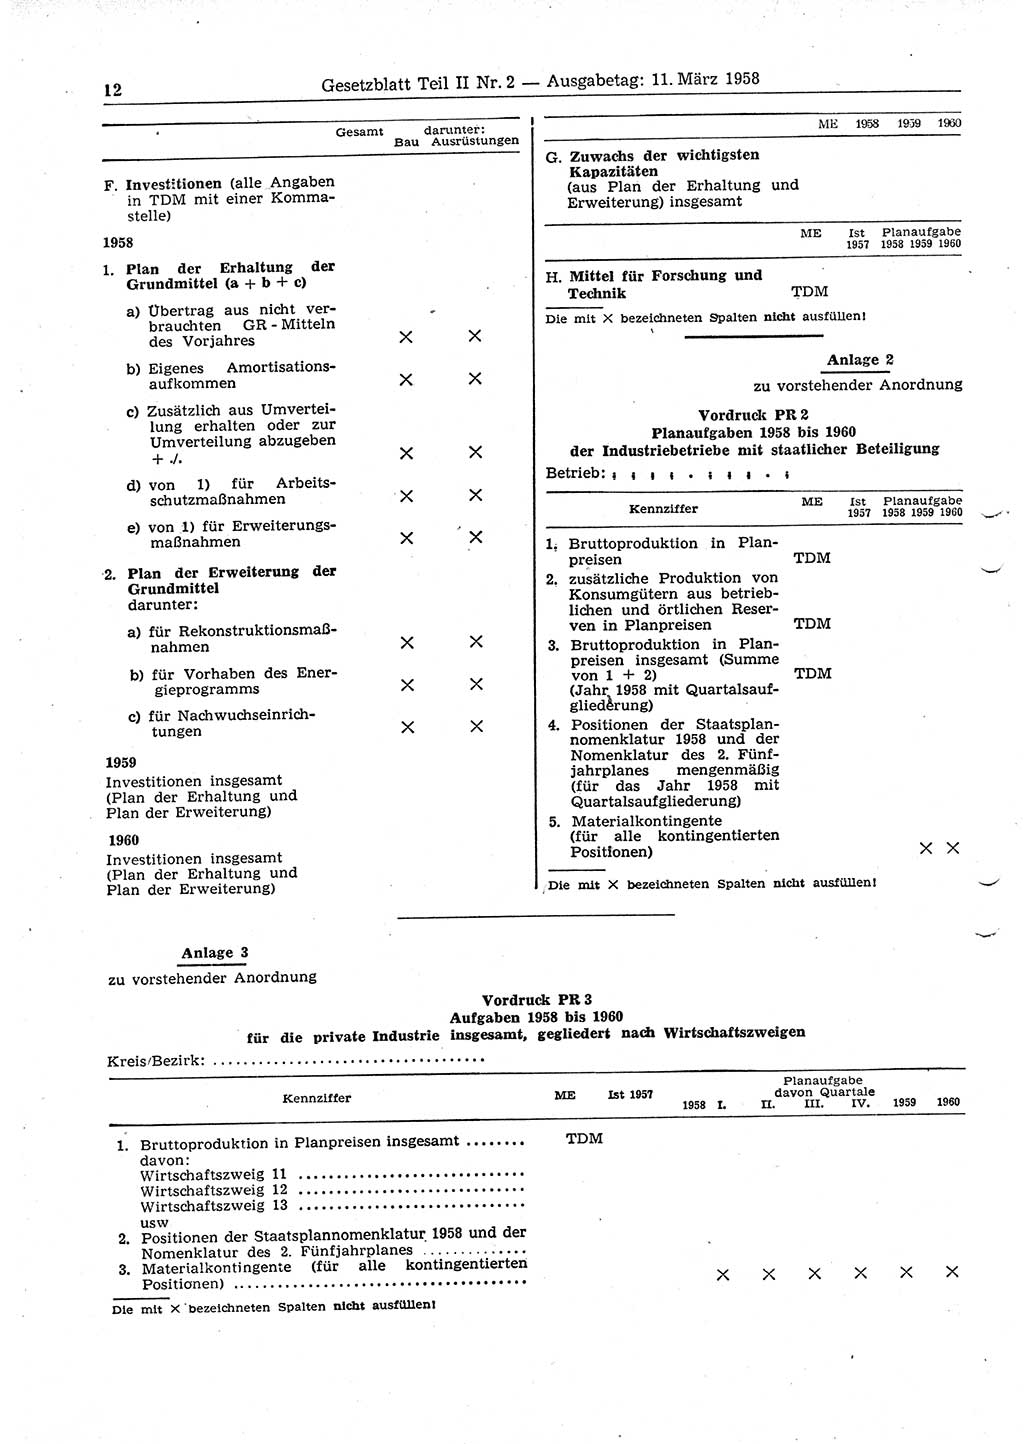 Gesetzblatt (GBl.) der Deutschen Demokratischen Republik (DDR) Teil ⅠⅠ 1958, Seite 12 (GBl. DDR ⅠⅠ 1958, S. 12)